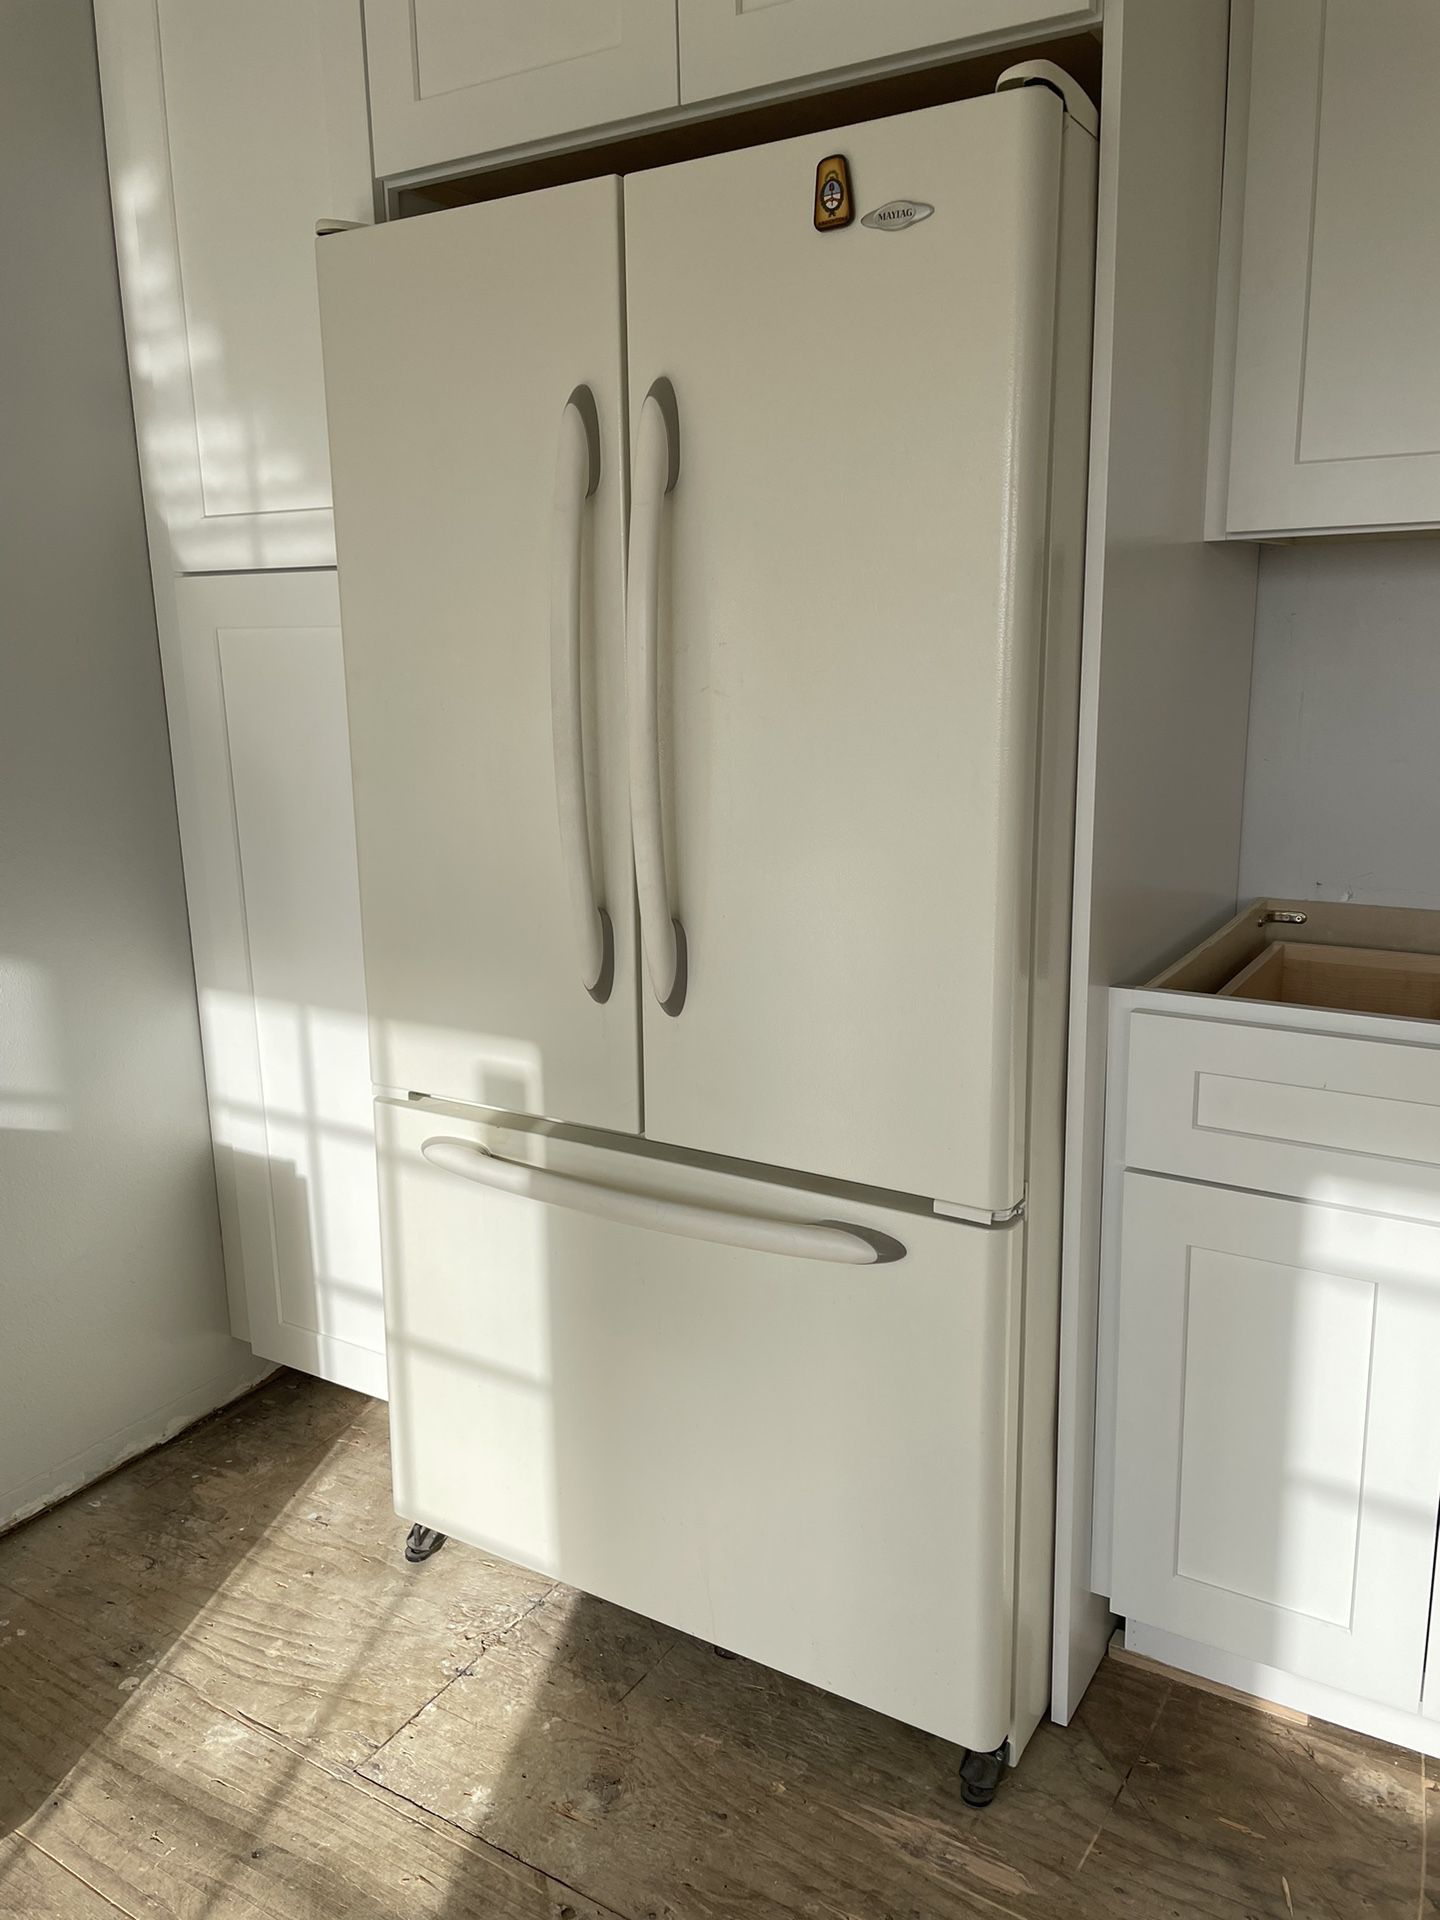 Maytag Refrigerator Model #MFD2561HEQ